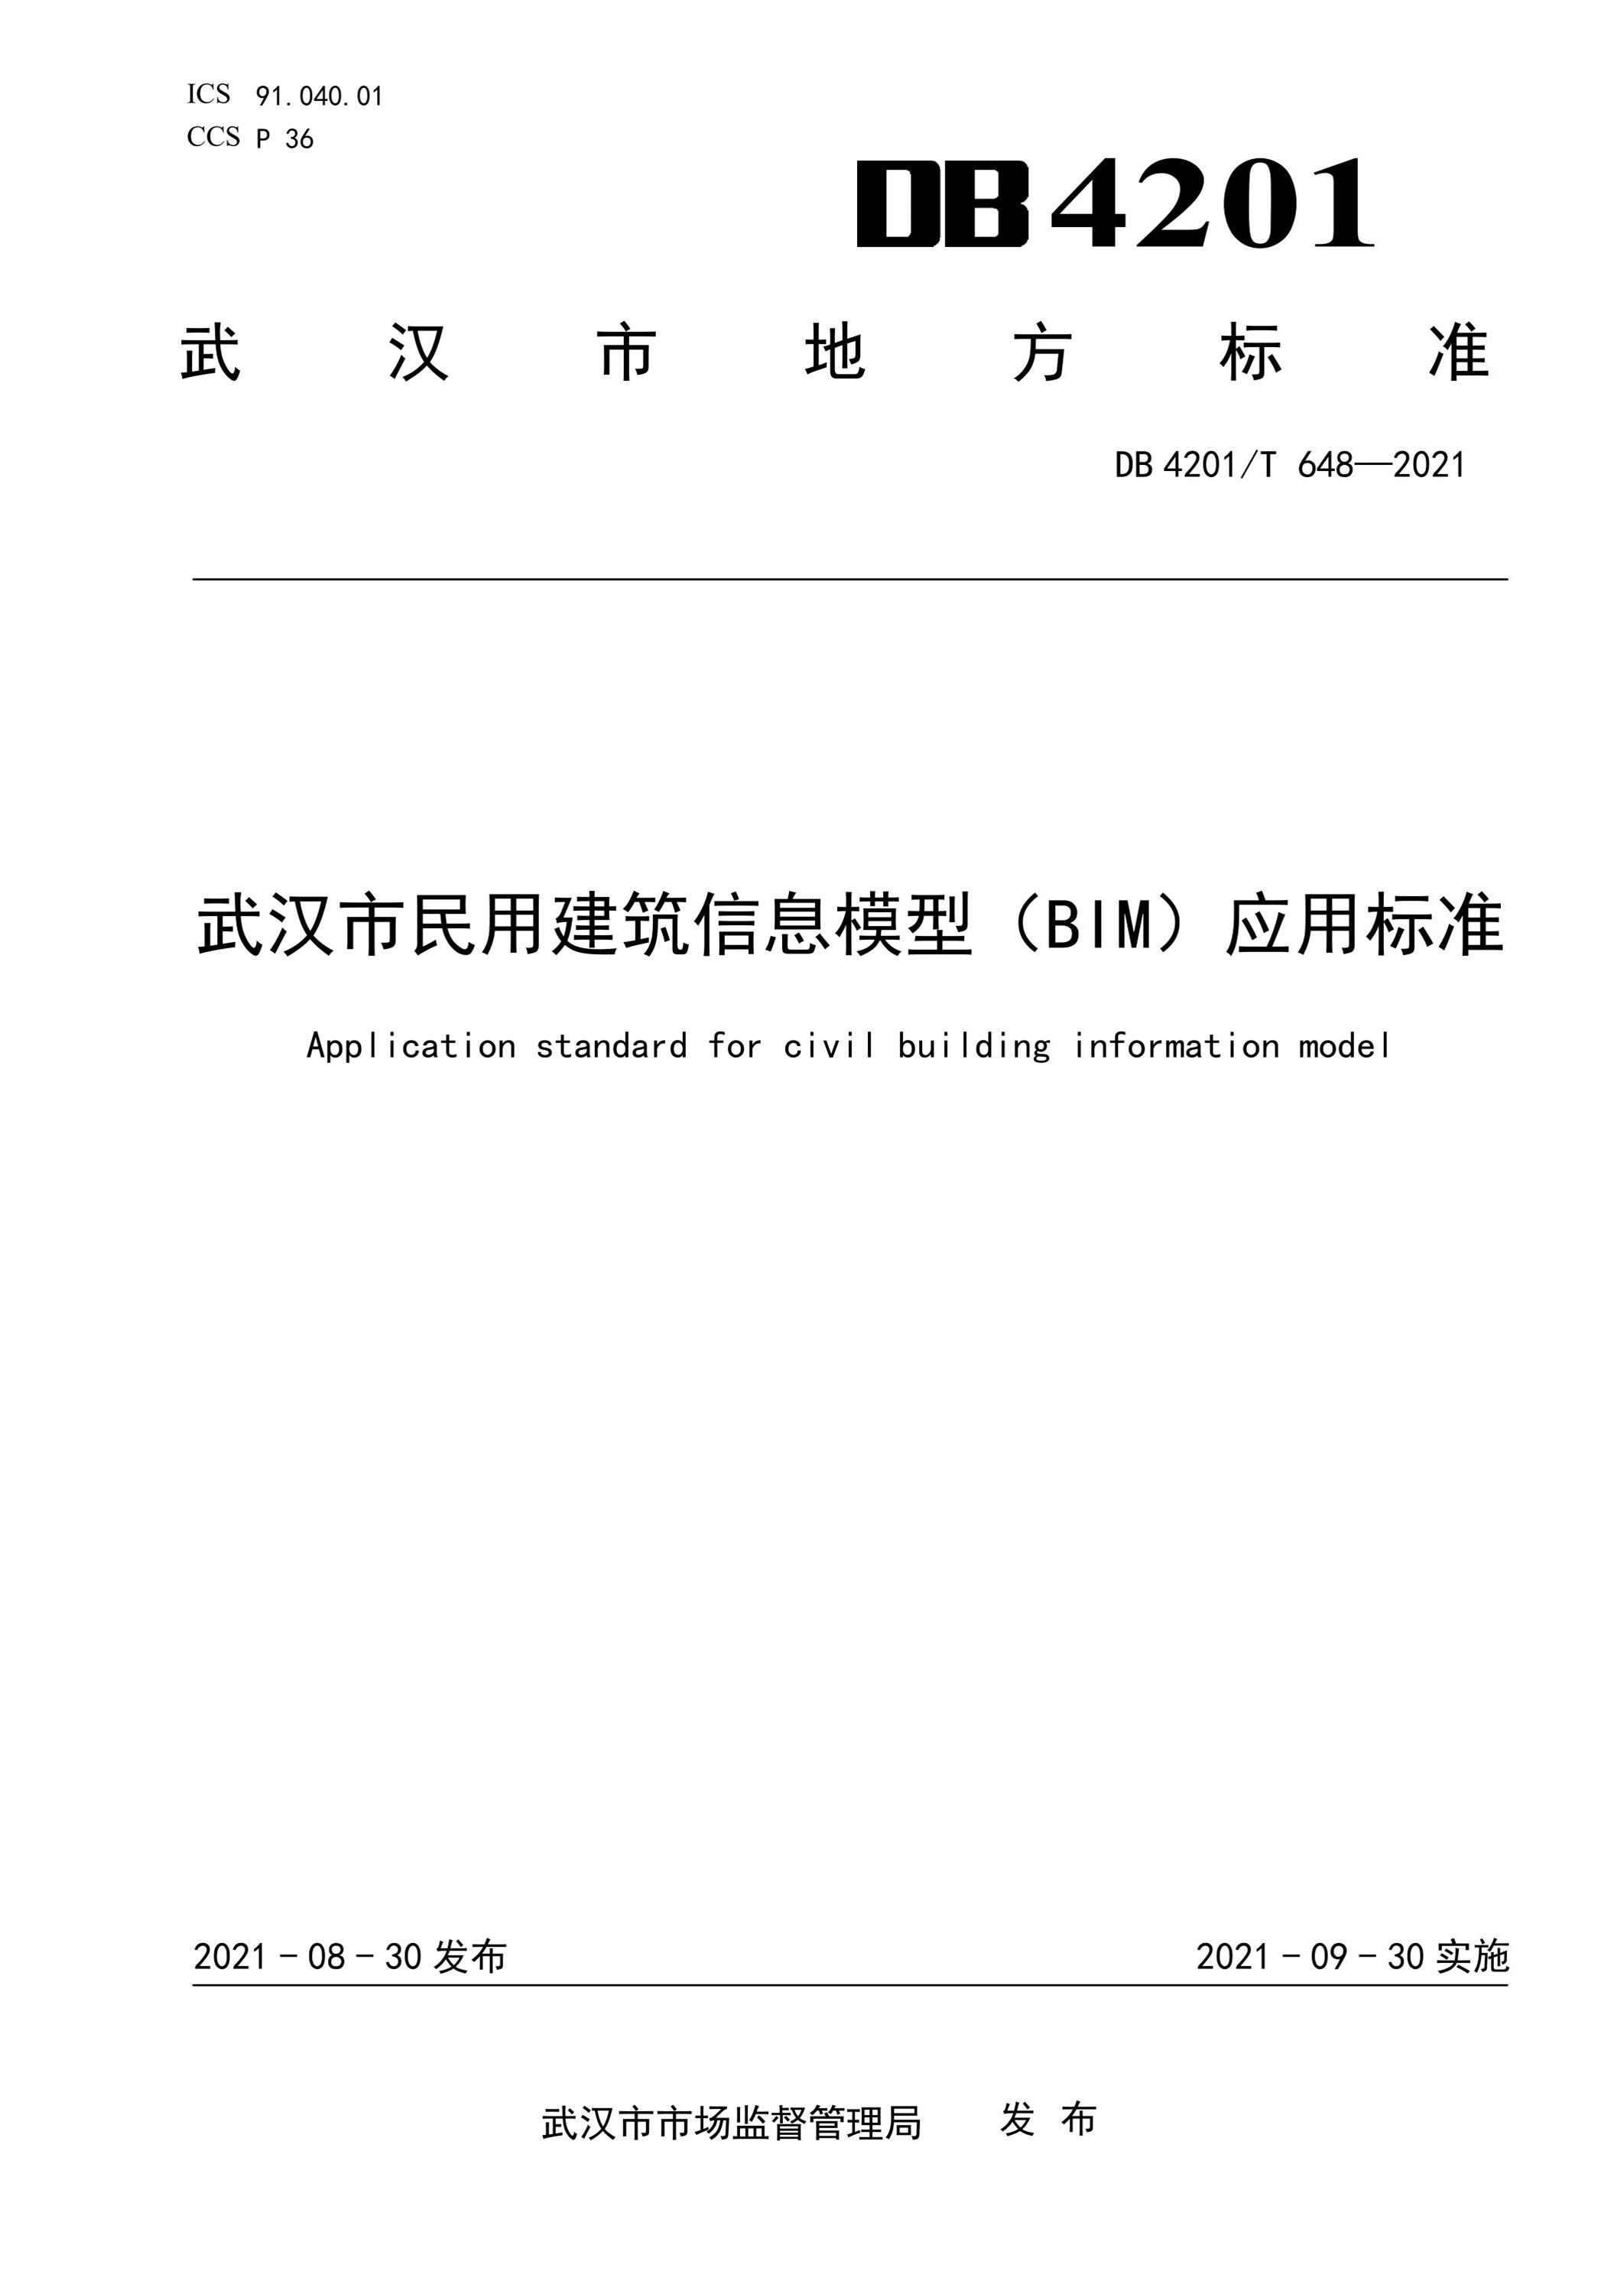 DB4201∕T 648-2021 武汉市民用建筑模型(BIM)应用标准资源截图